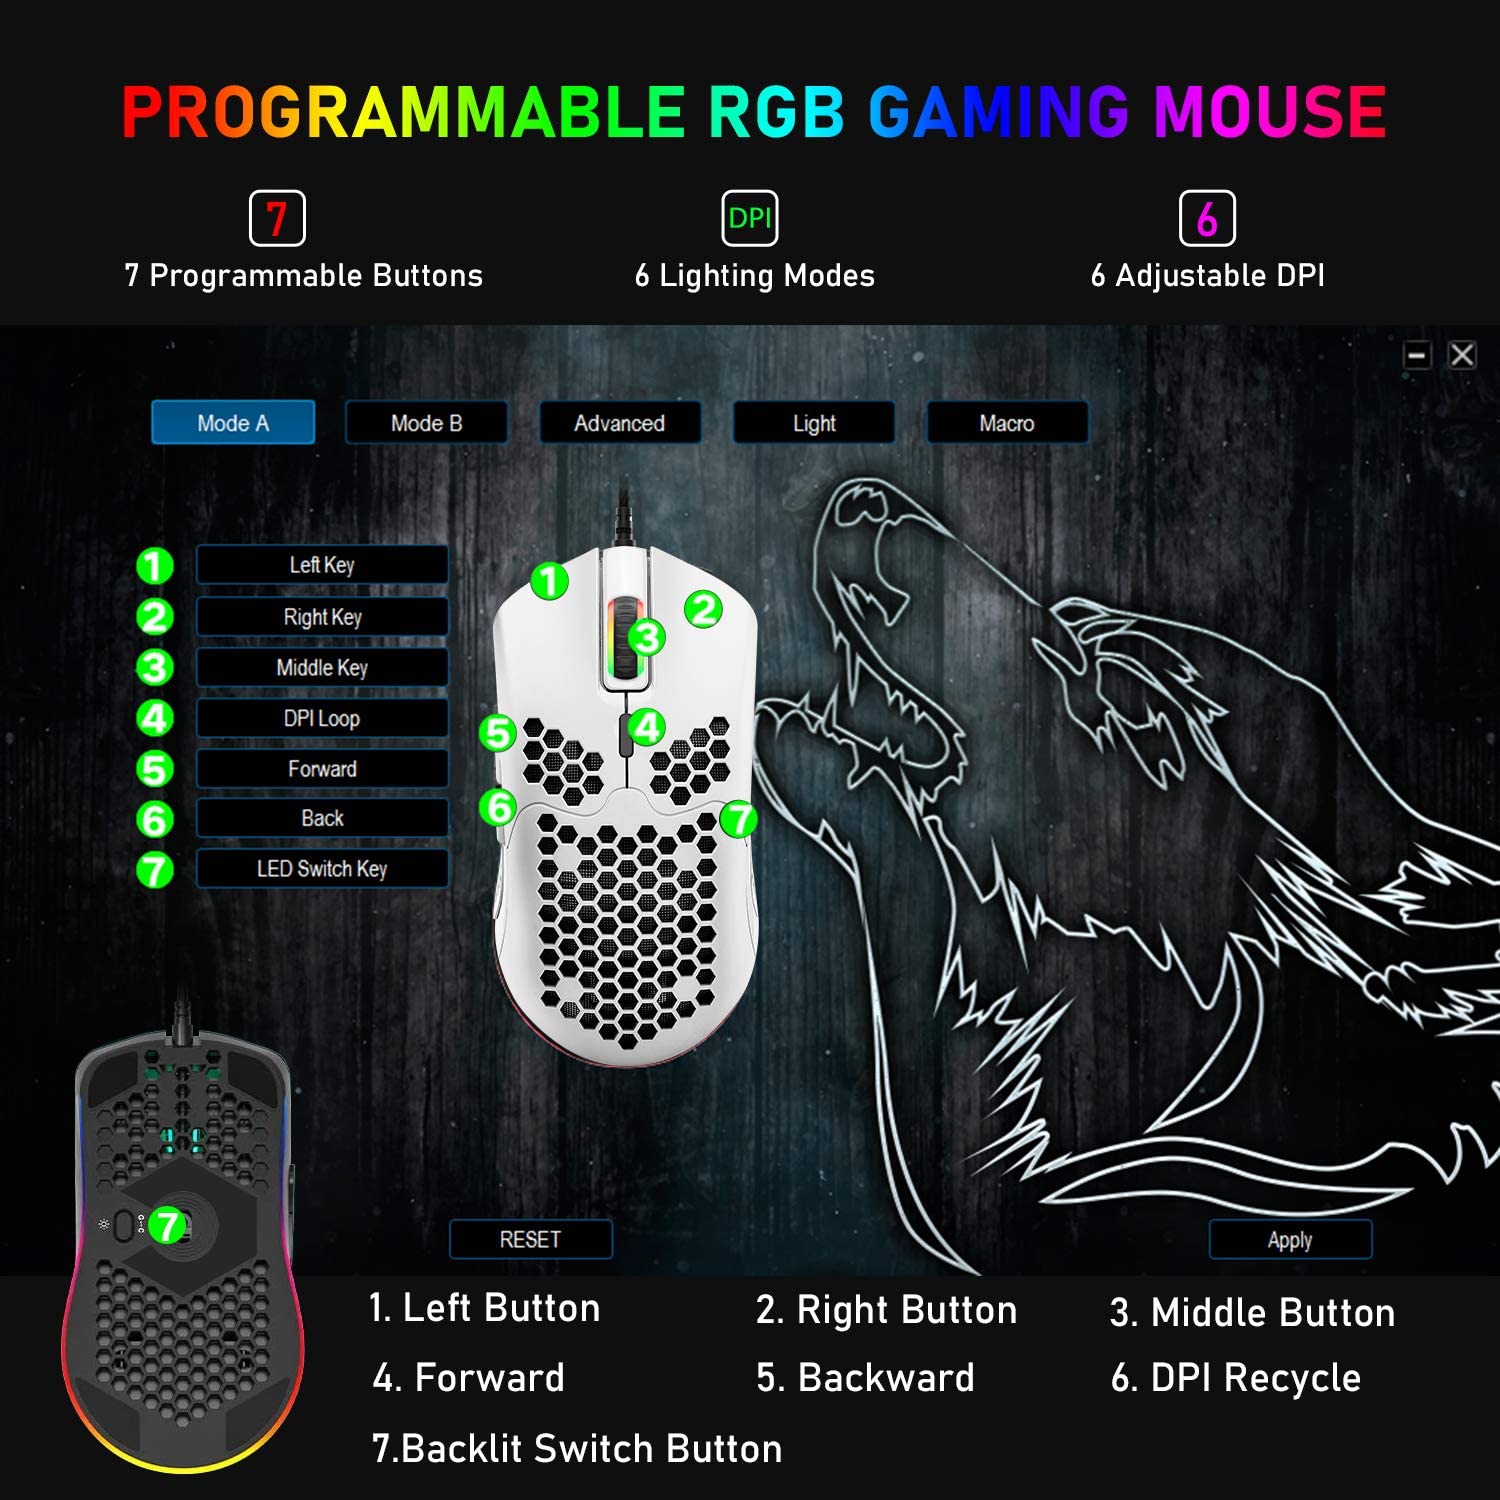 Ratón ligero para juegos con cable, 6 ratones retroiluminados RGB con controlador programable de 7 botones, ratón de ordenador de 6400 DPI, ratón de cable ultraligero con carcasa de nido de abeja ultraligero para jugadores de PC, Xbox, PS4 (azul)